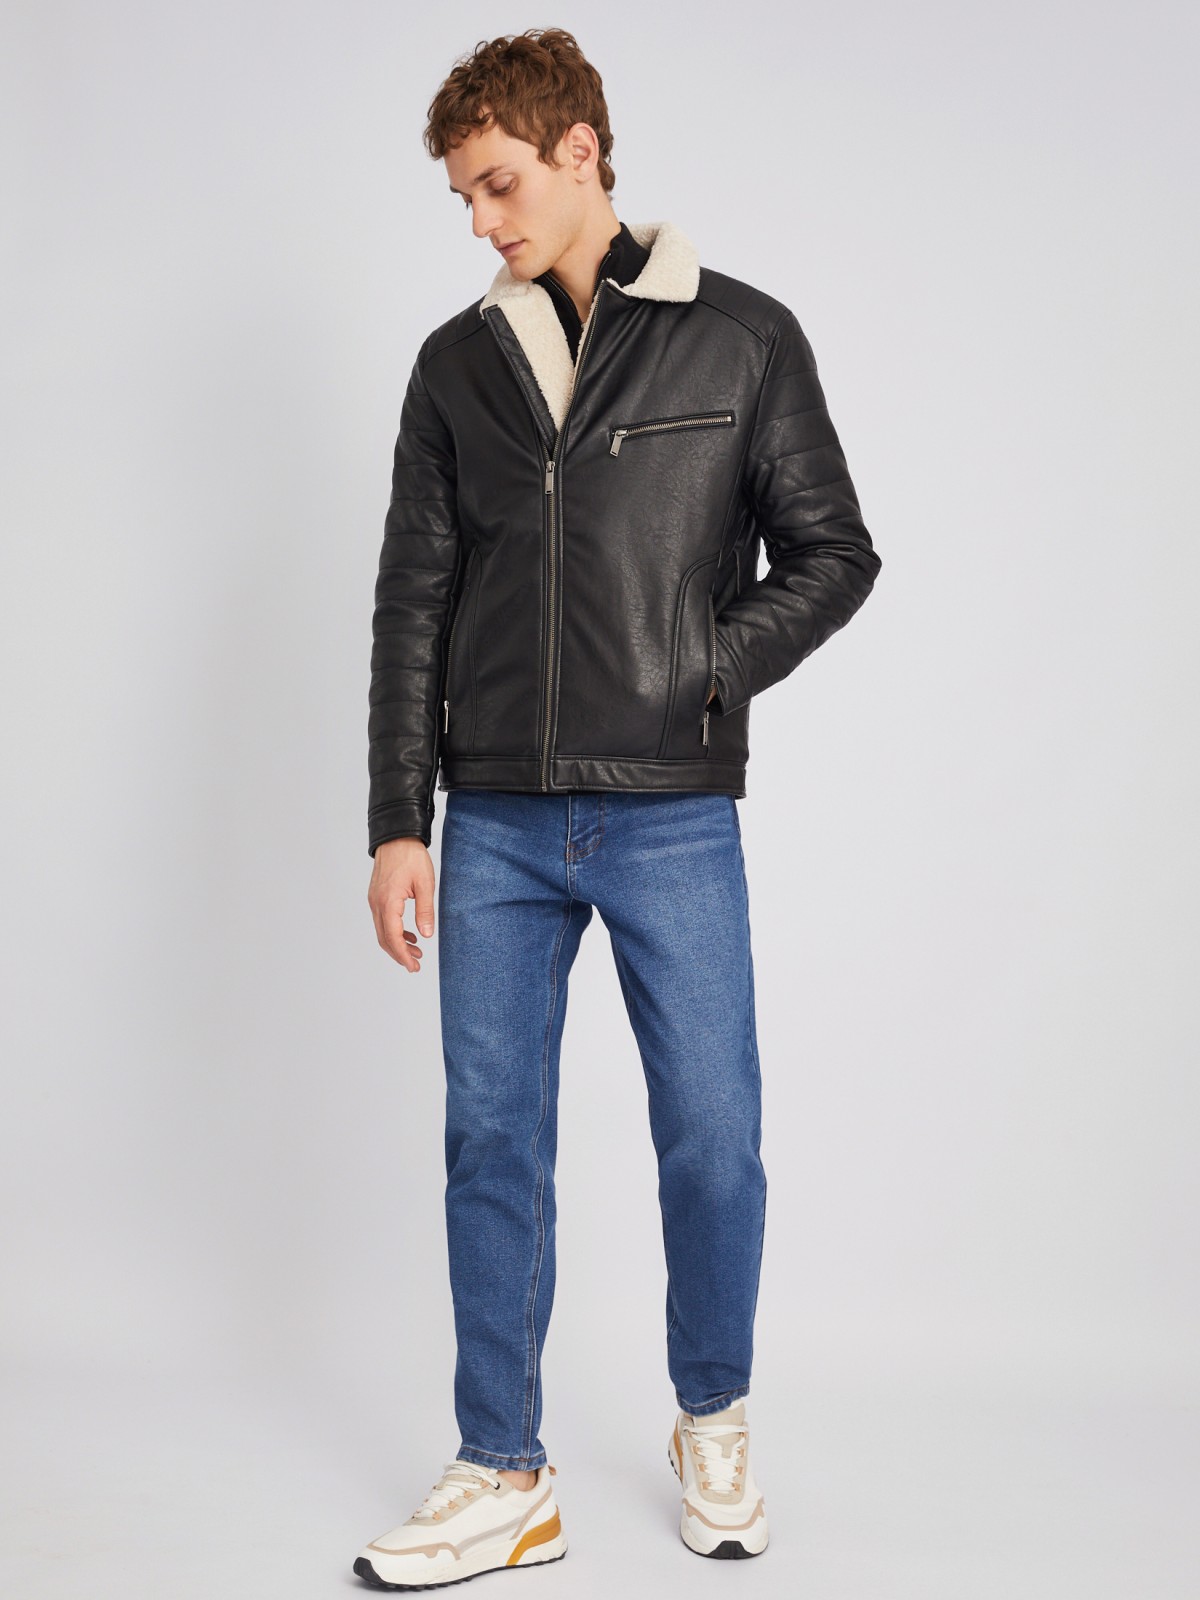 Тёплая куртка-косуха из экокожи с подкладкой из экомеха на синтепоне zolla 012345150154, цвет черный, размер L - фото 2